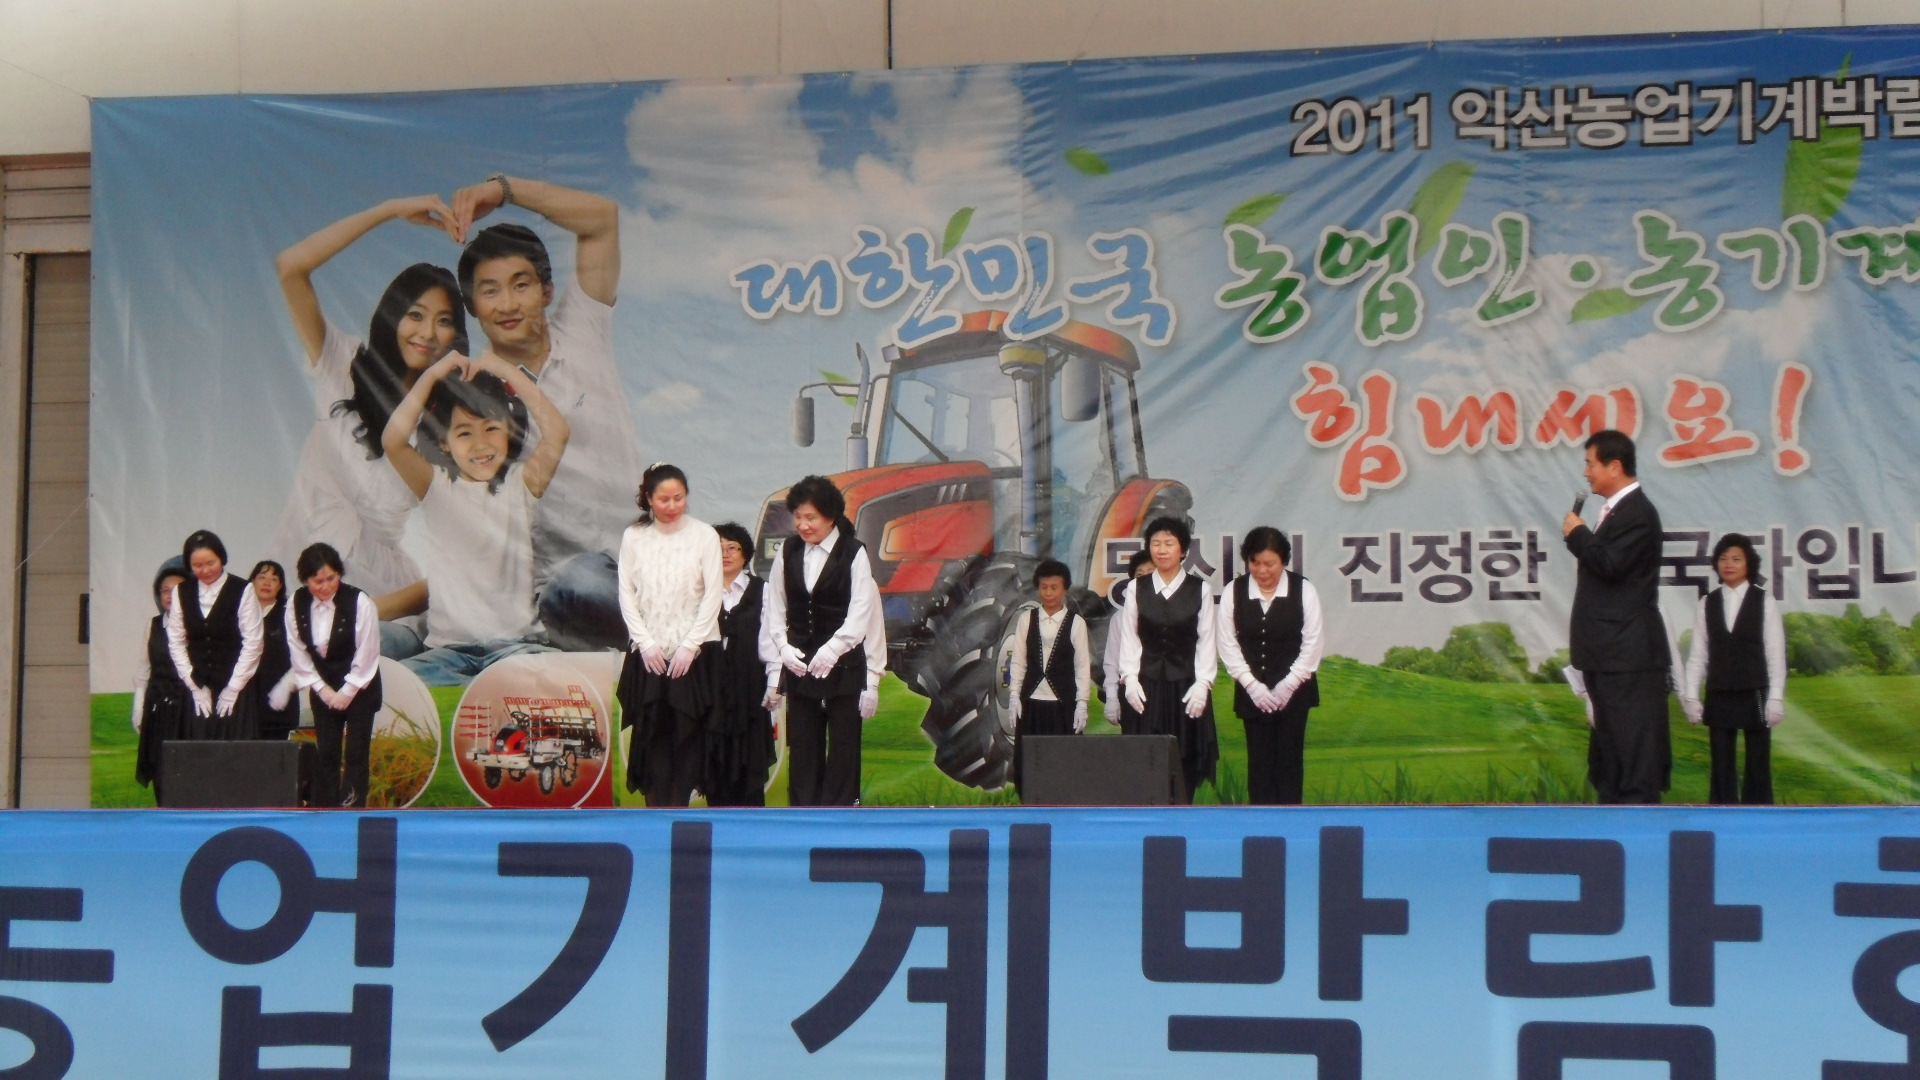 2011 익산농업기계박람회 공연(댄스스포츠팀)1